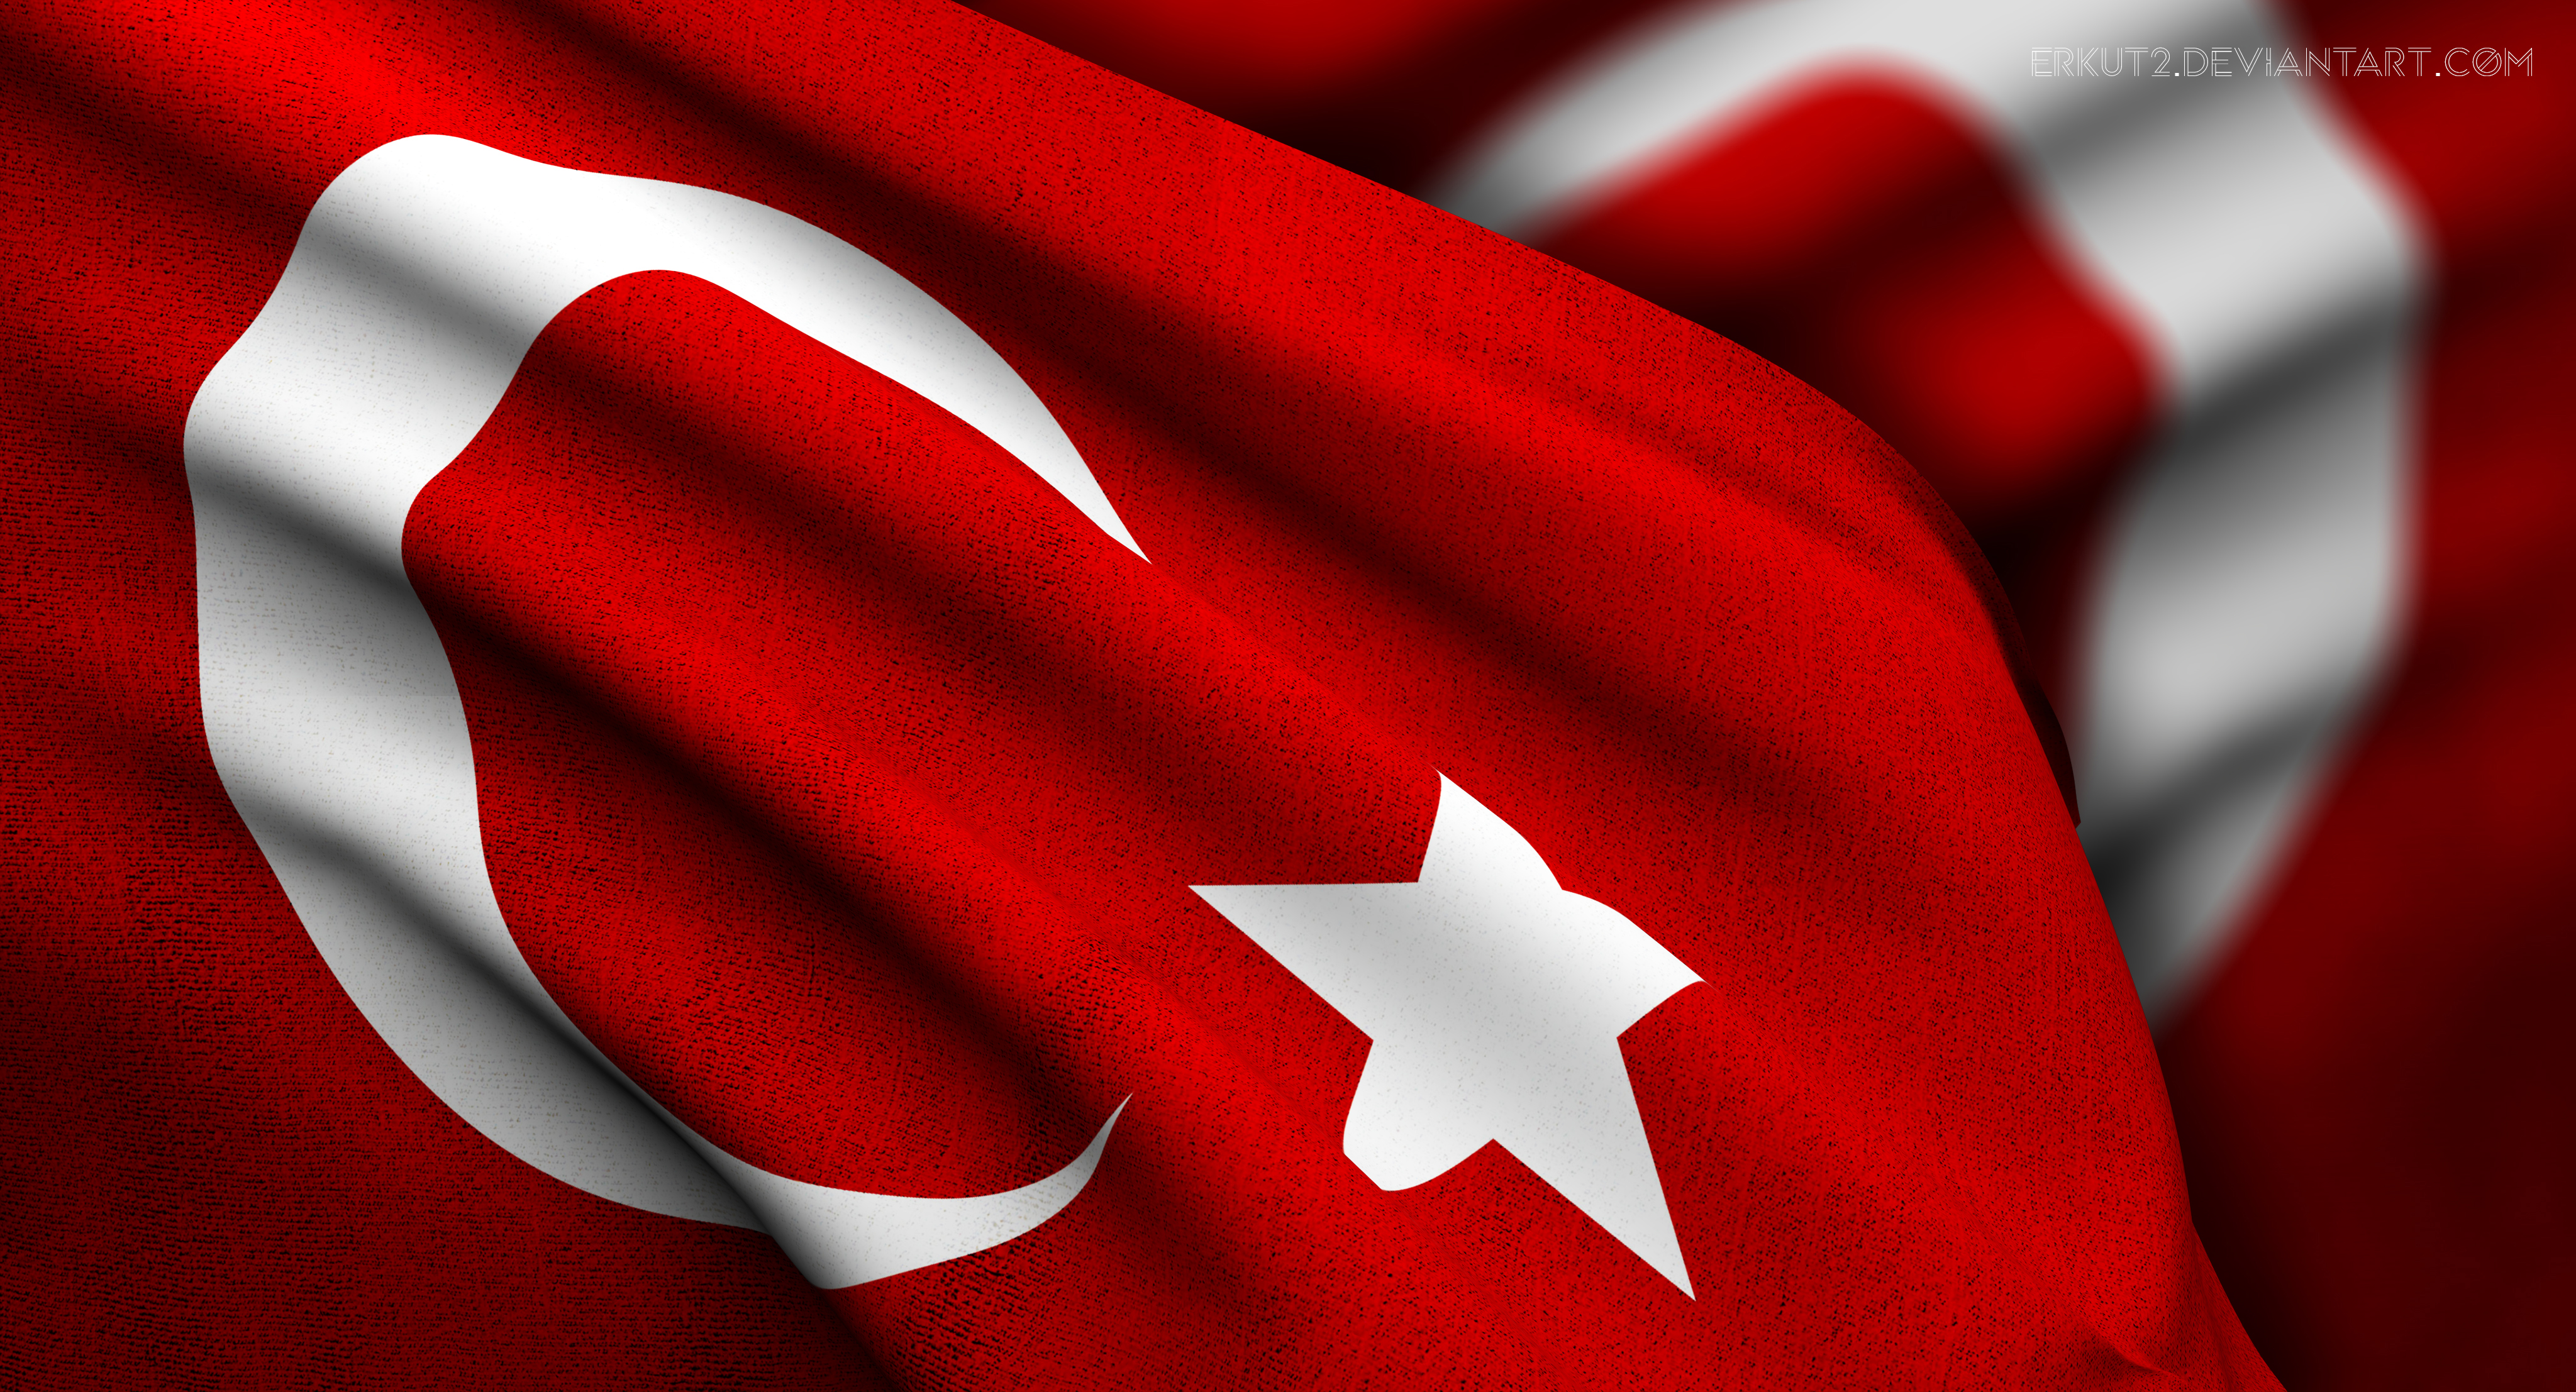 turkey_flag_by_erkut2-d7dzsla.jpg